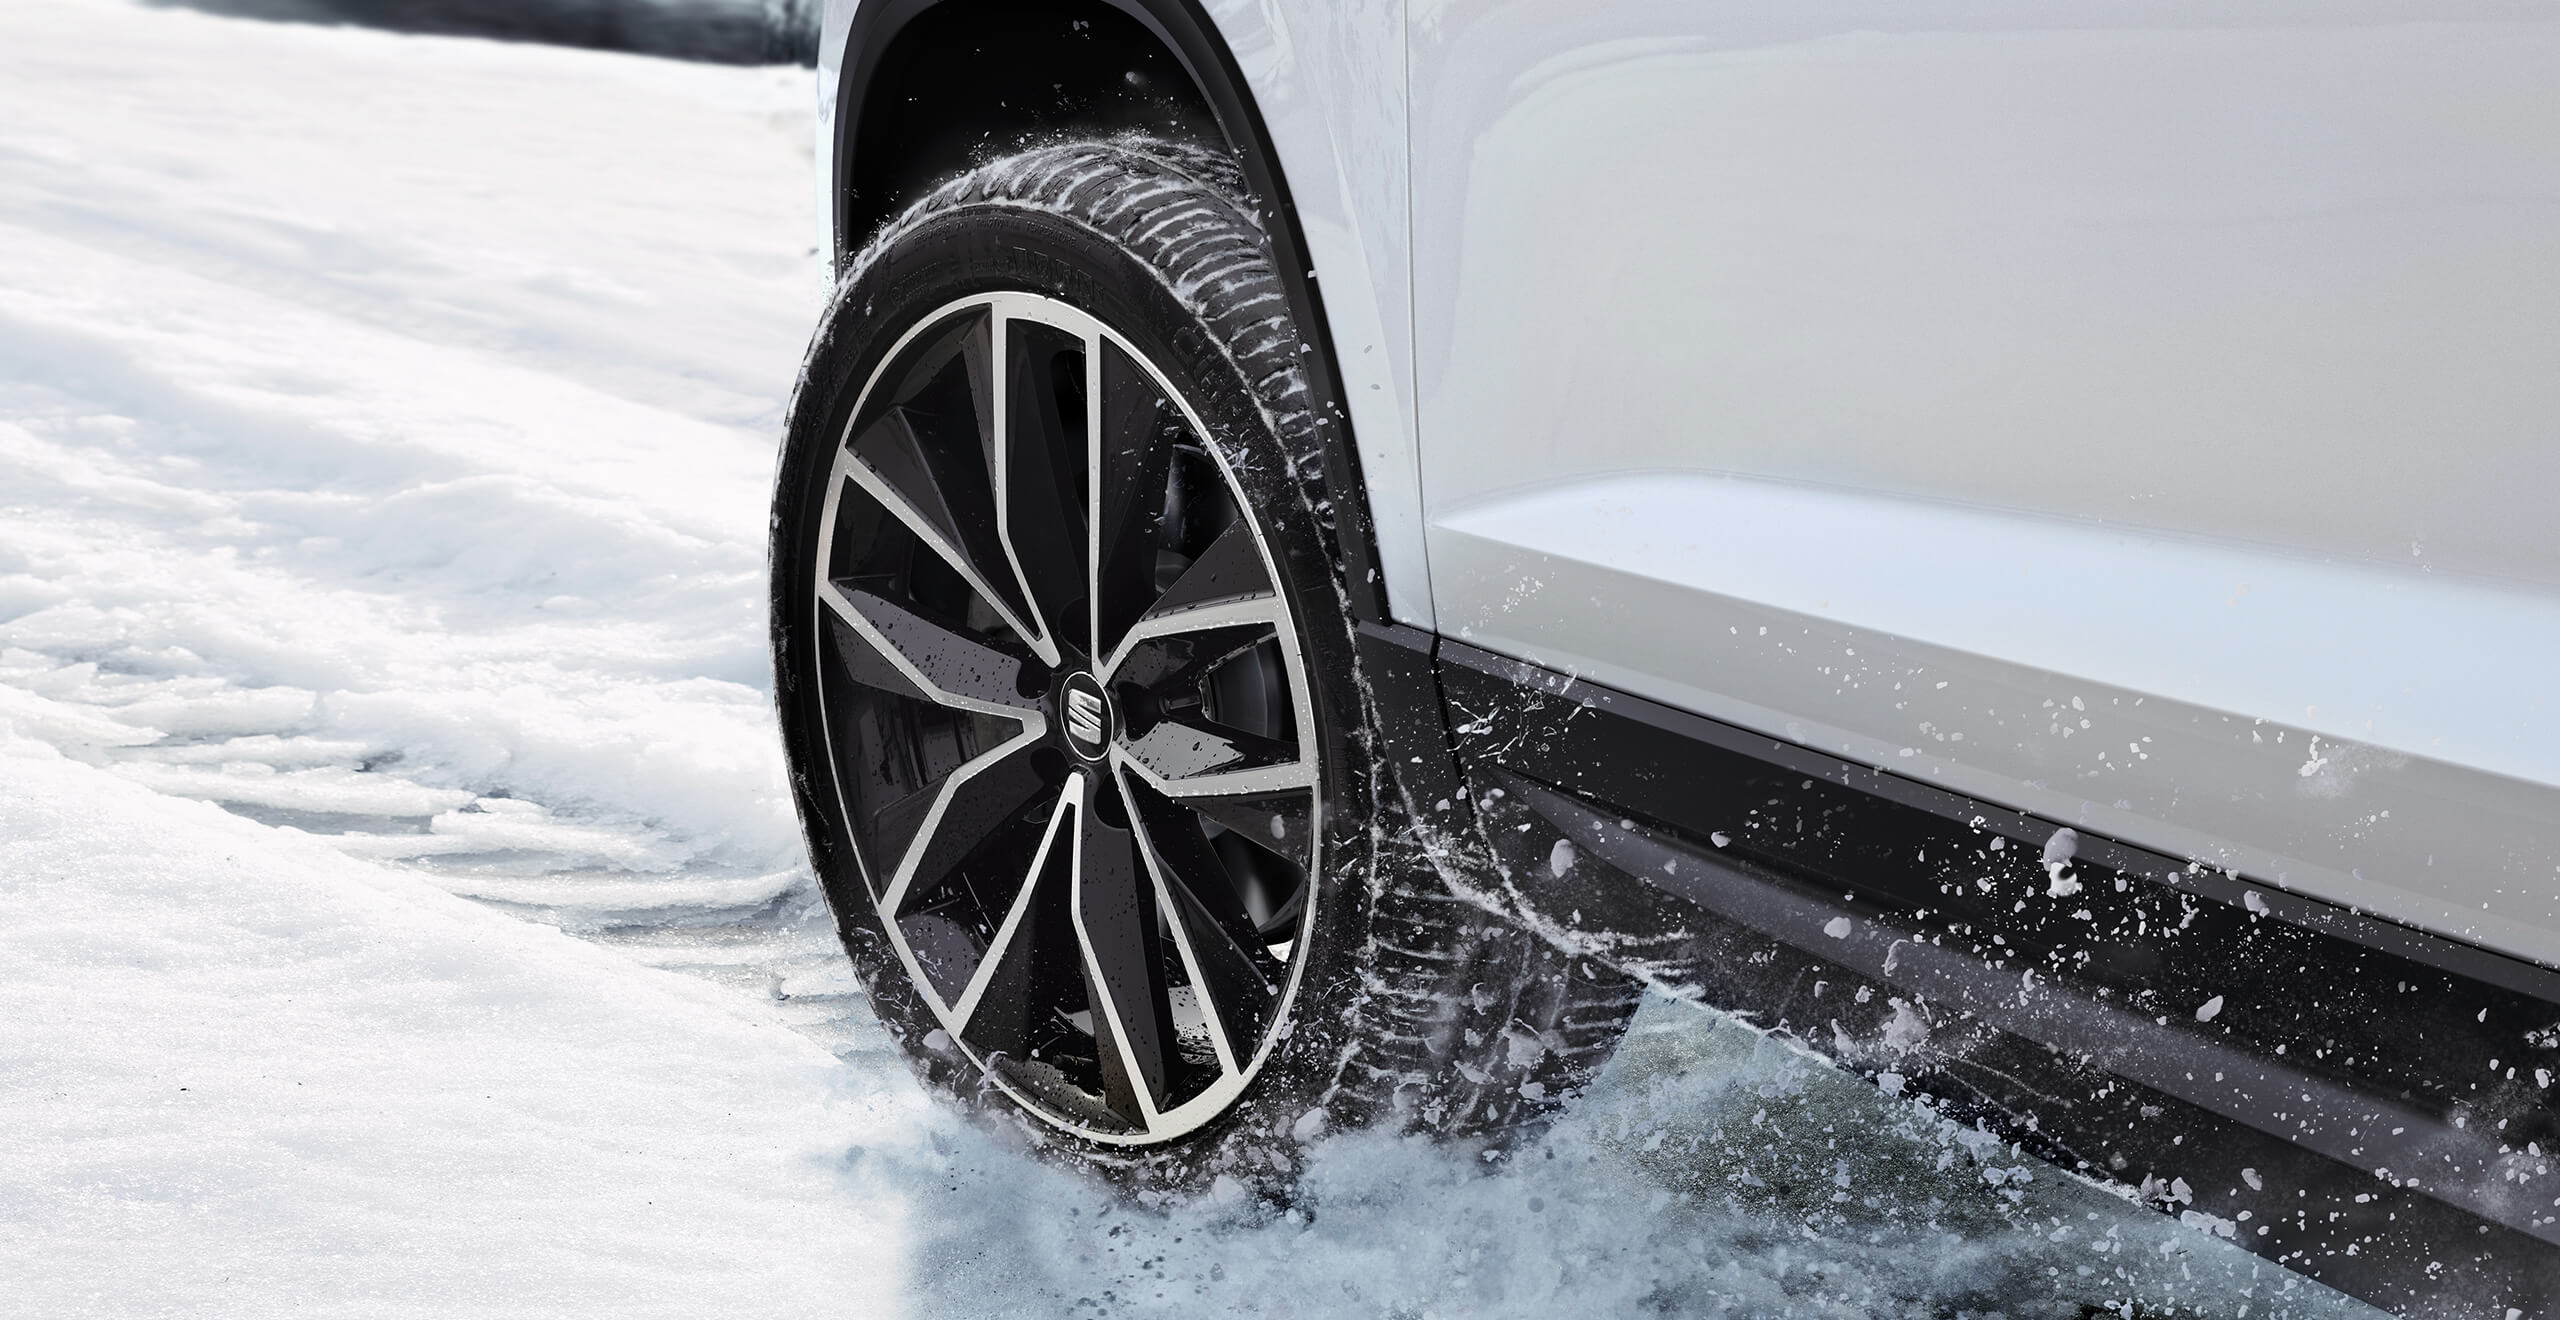 Attēlots SEAT Ateca automašīnas braucošs ritenis uz sniegota ceļa. Droša braukšana un vadība attēlo braukšanu ar SEAT Ateca 4Drive visu riteņu piedziņas sistēmas versiju